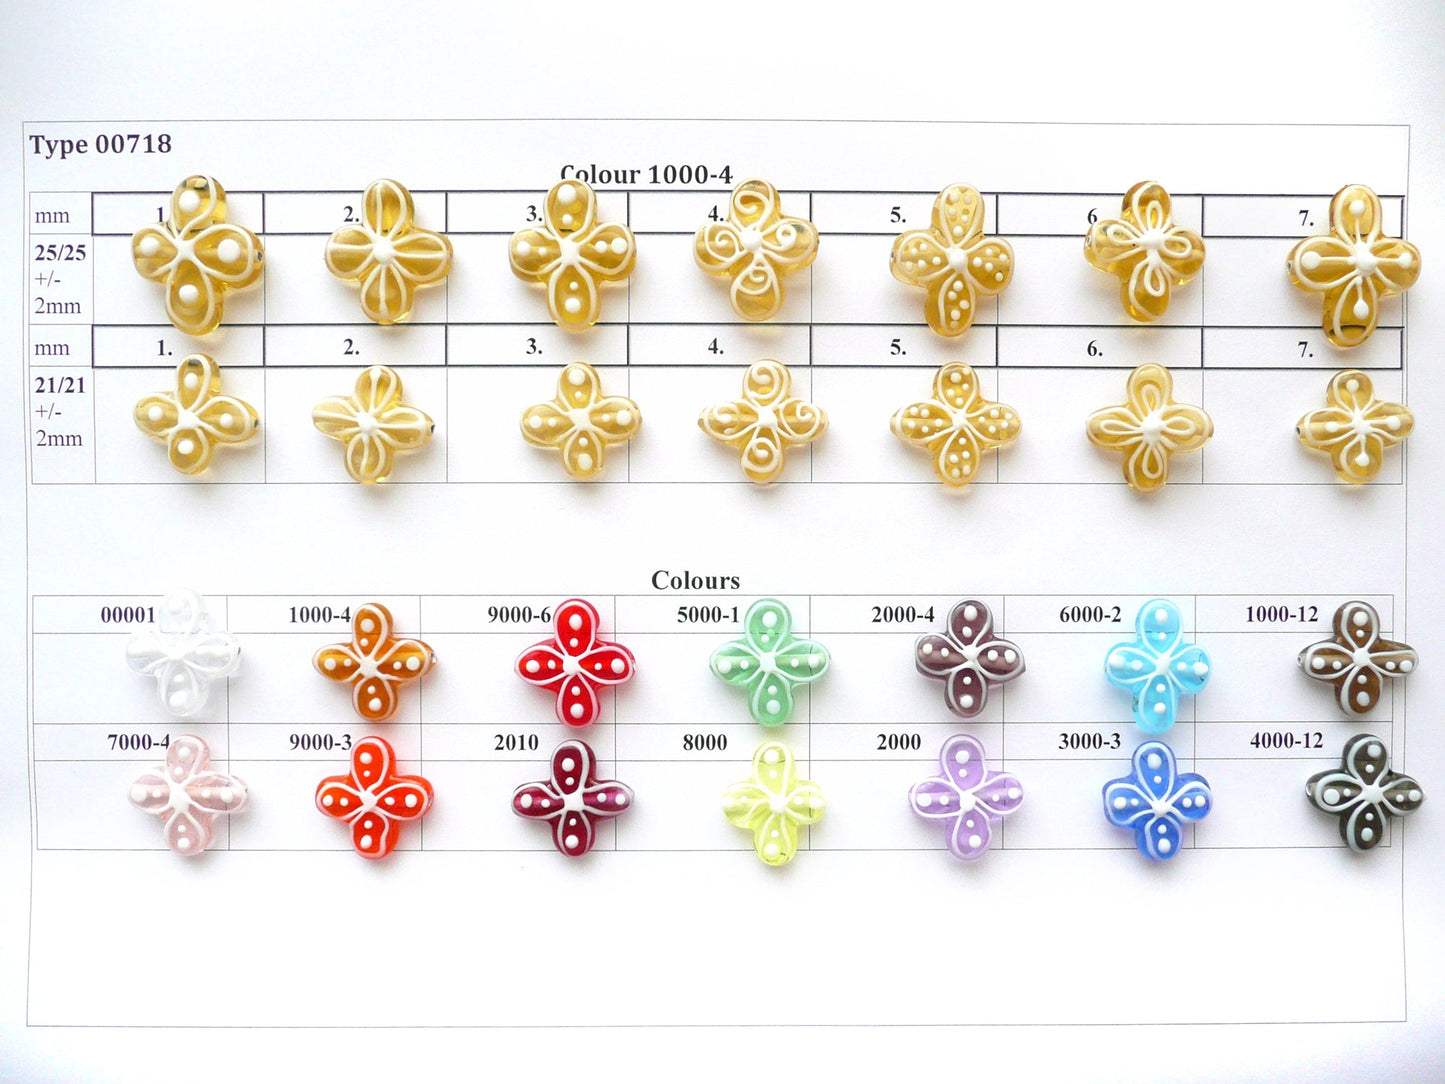 30 pcs Flower Lampwork Beads 718 / Design 3, Handmade, Preciosa Glass, Czech Republic